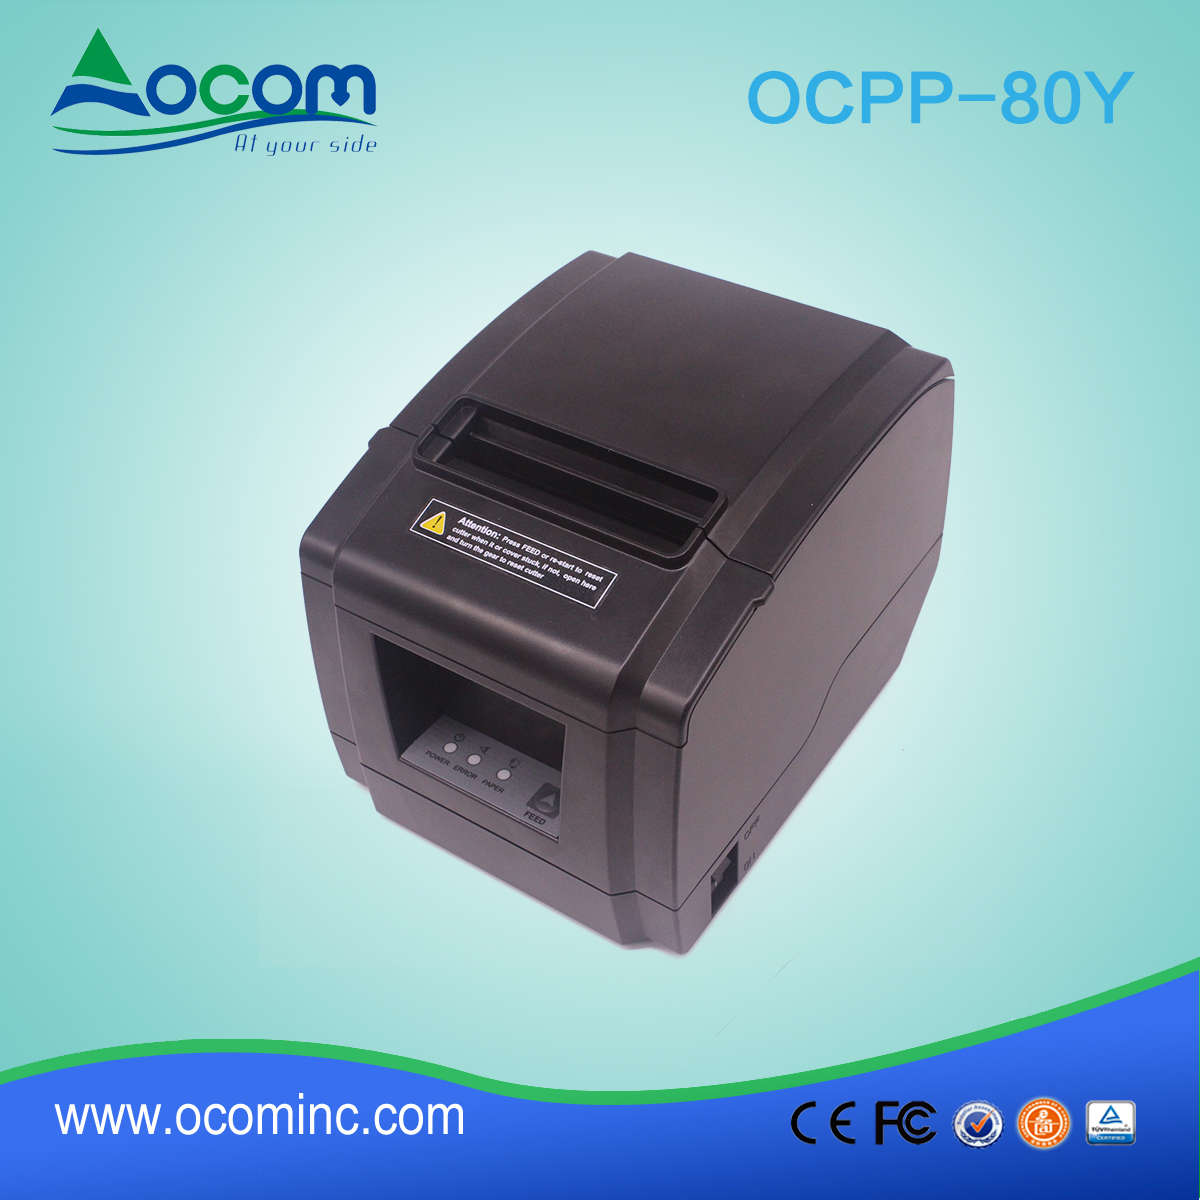 Nieuw model OCPP-80Y 80 mm thermische printer met usb & autosnijder